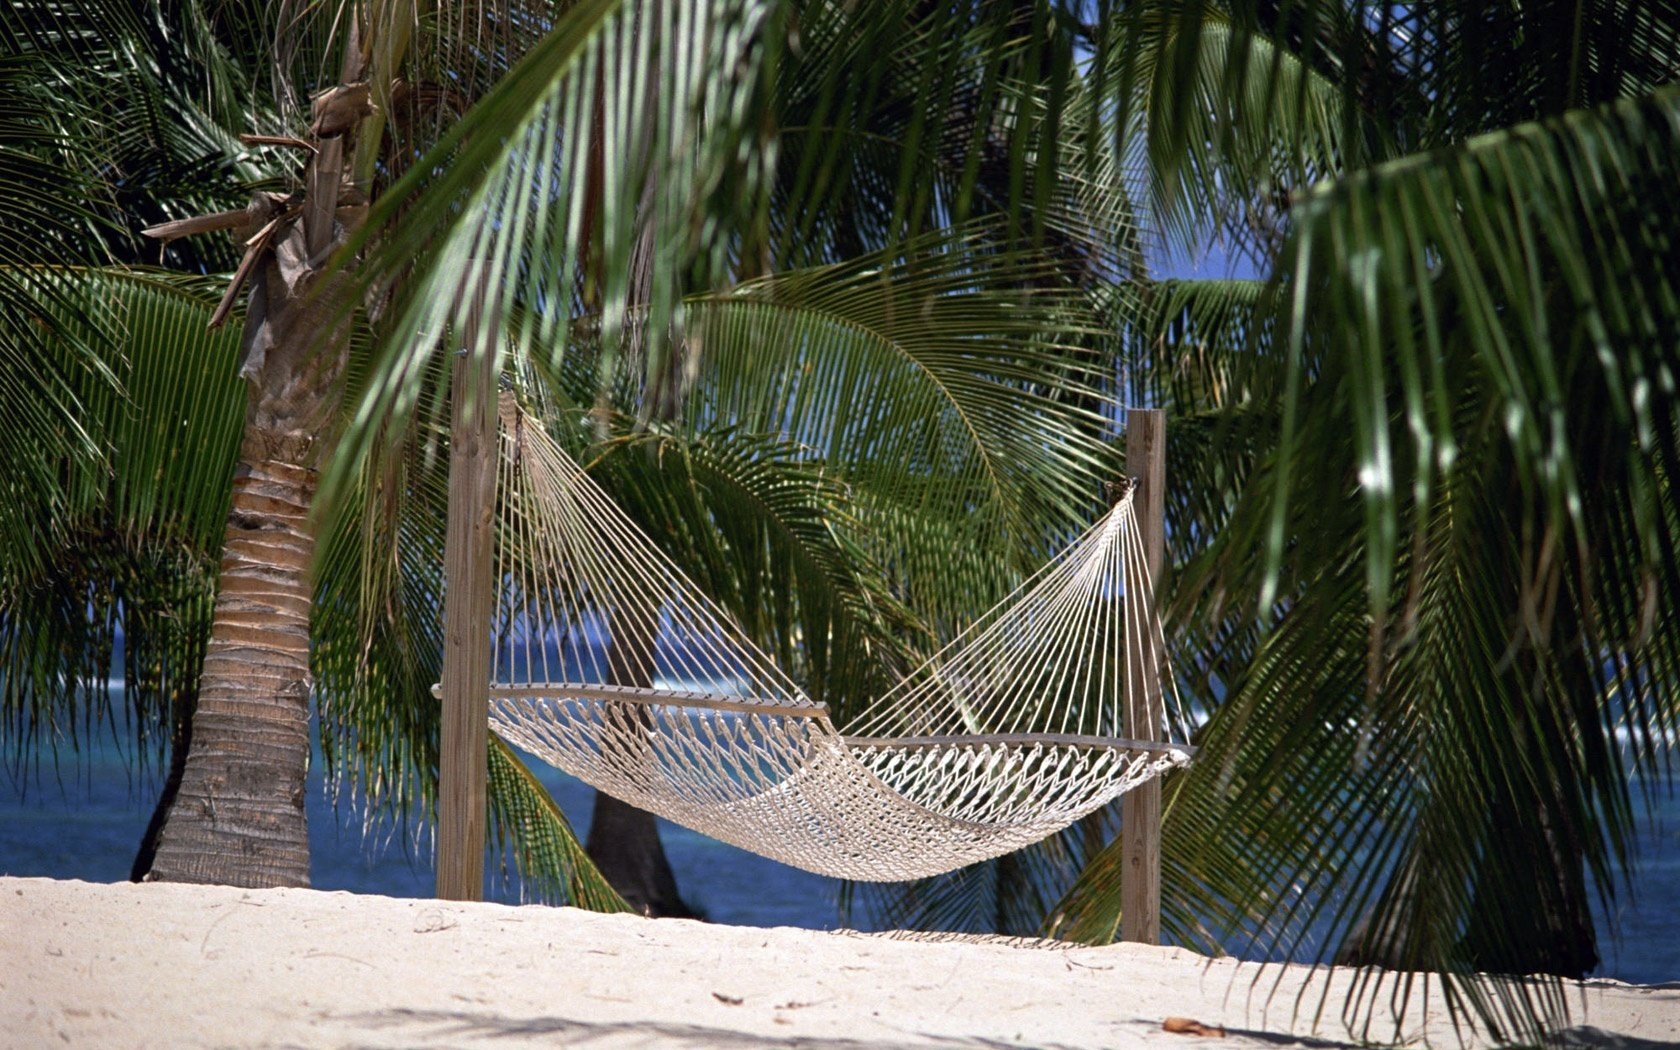 Гамак из ниток между пальмами на песчаном пляже в райском уголке земного шара